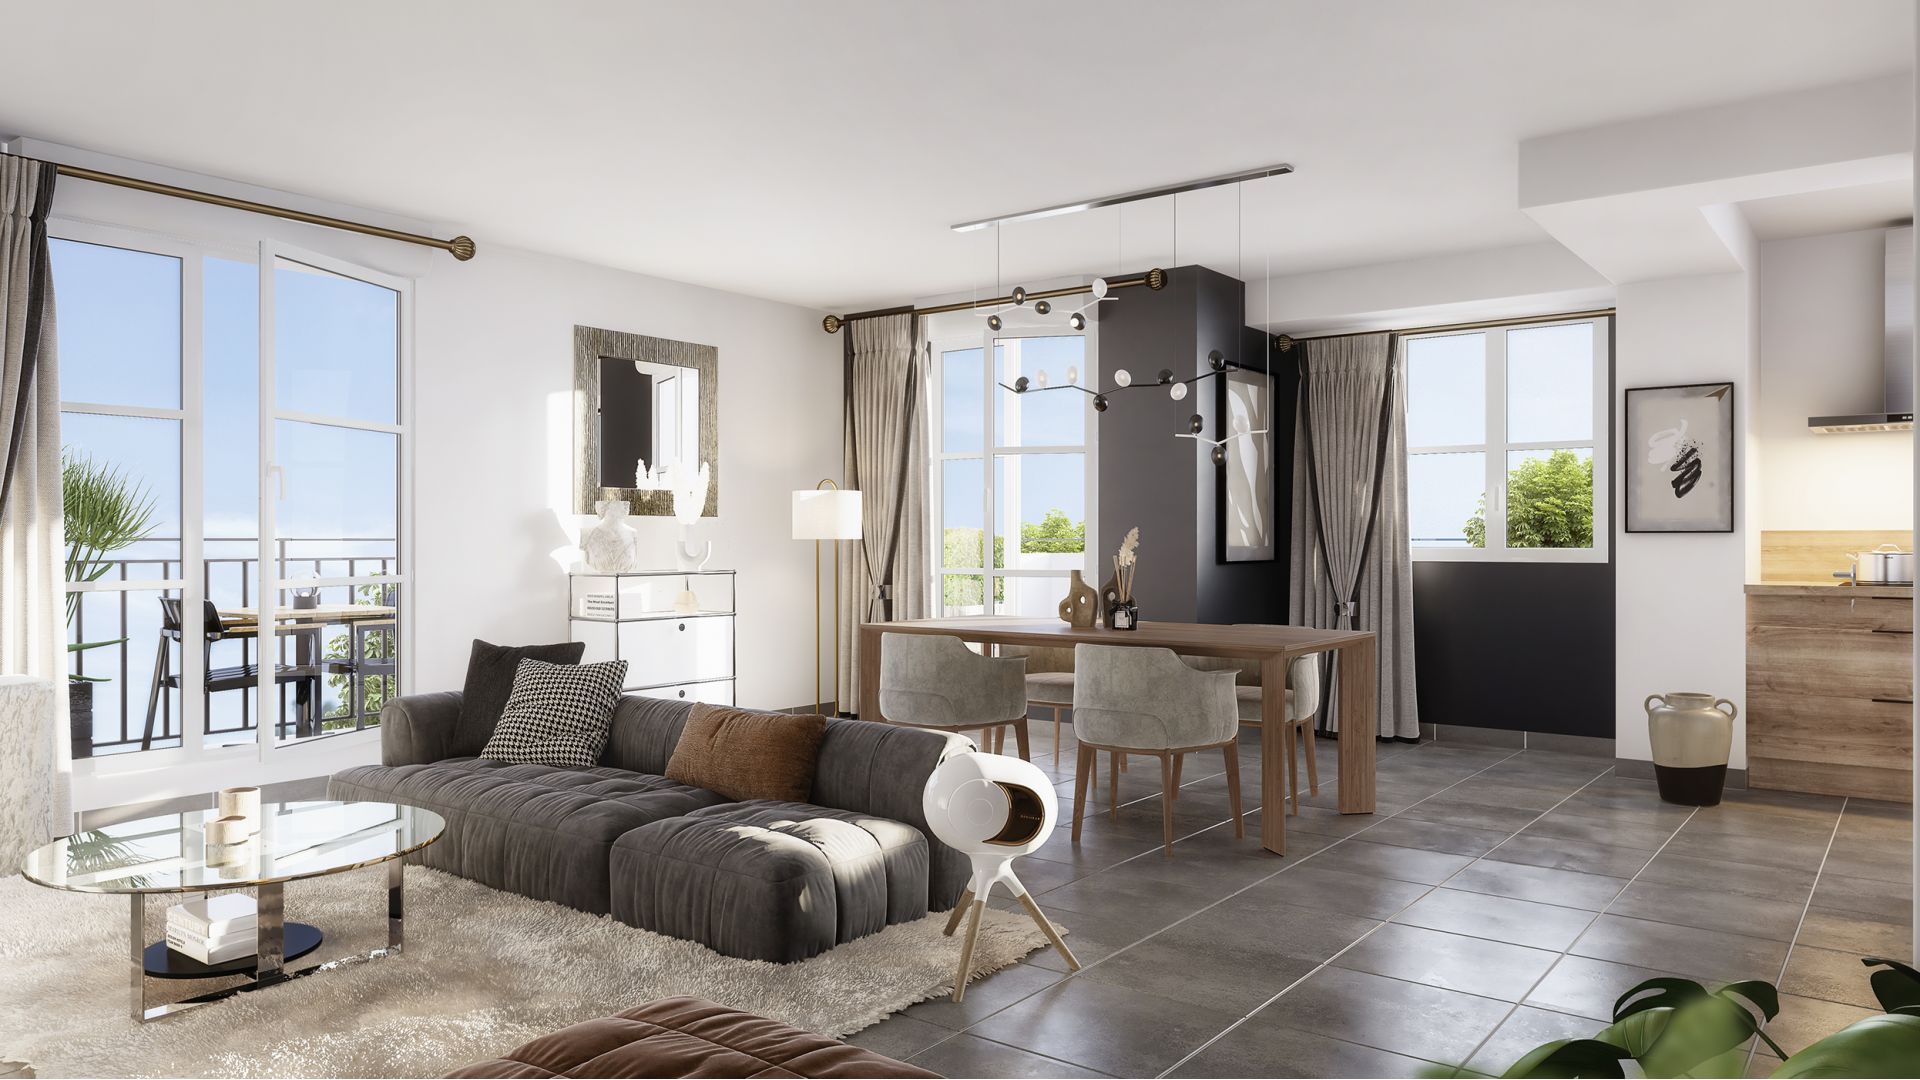 Greencity Immobilier - Résidence Villa Eugénie - achat appartements neufs du T1 bis au T4 - Le Blanc-Mesnil - 93150 - vue intérieure